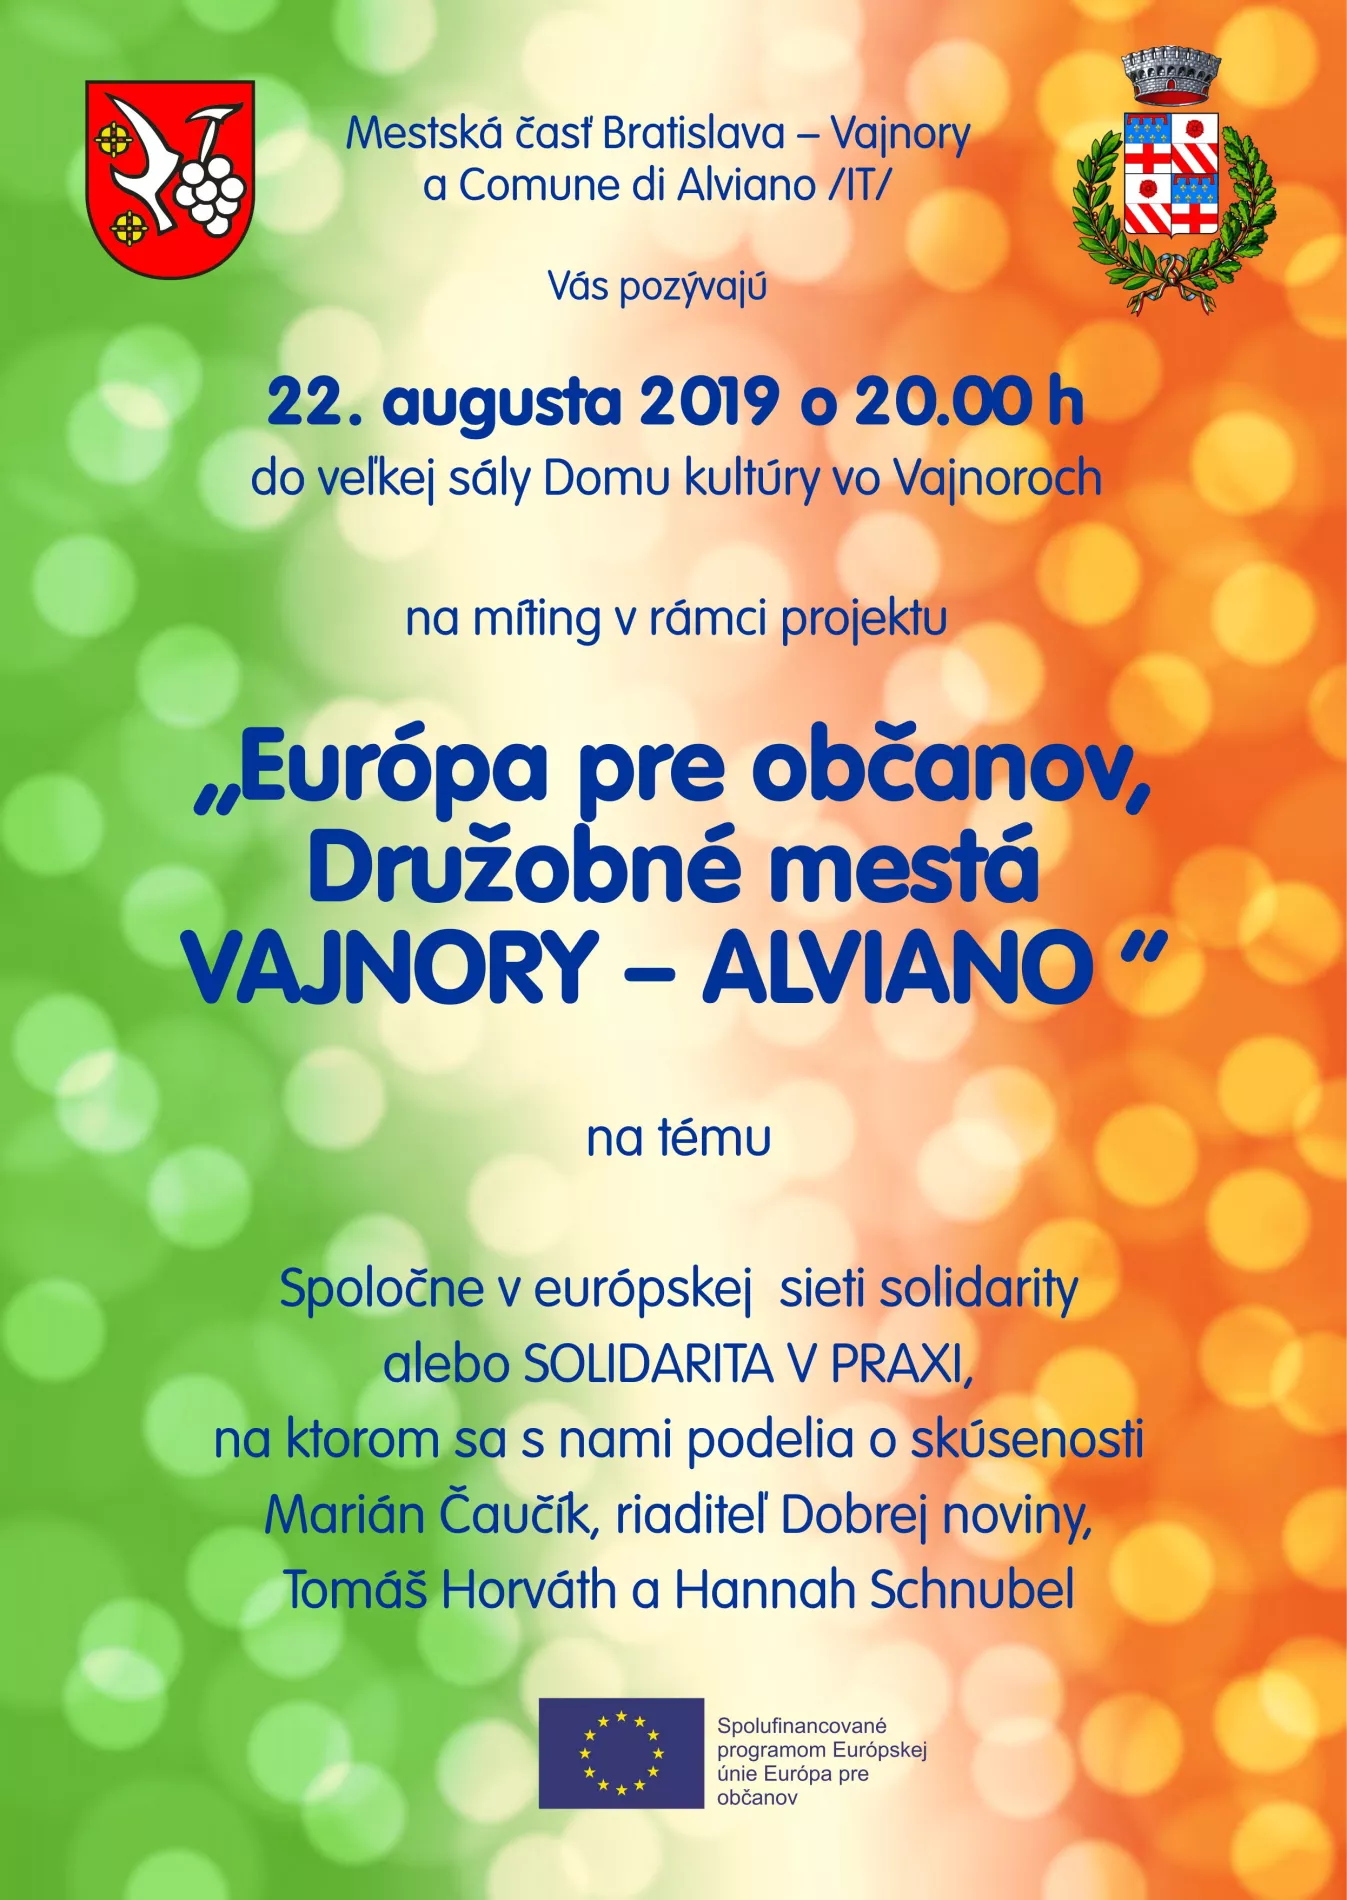 "Európa pre občanov, Družobné mestá Vajnory - Alviano" 22. augusta 2019